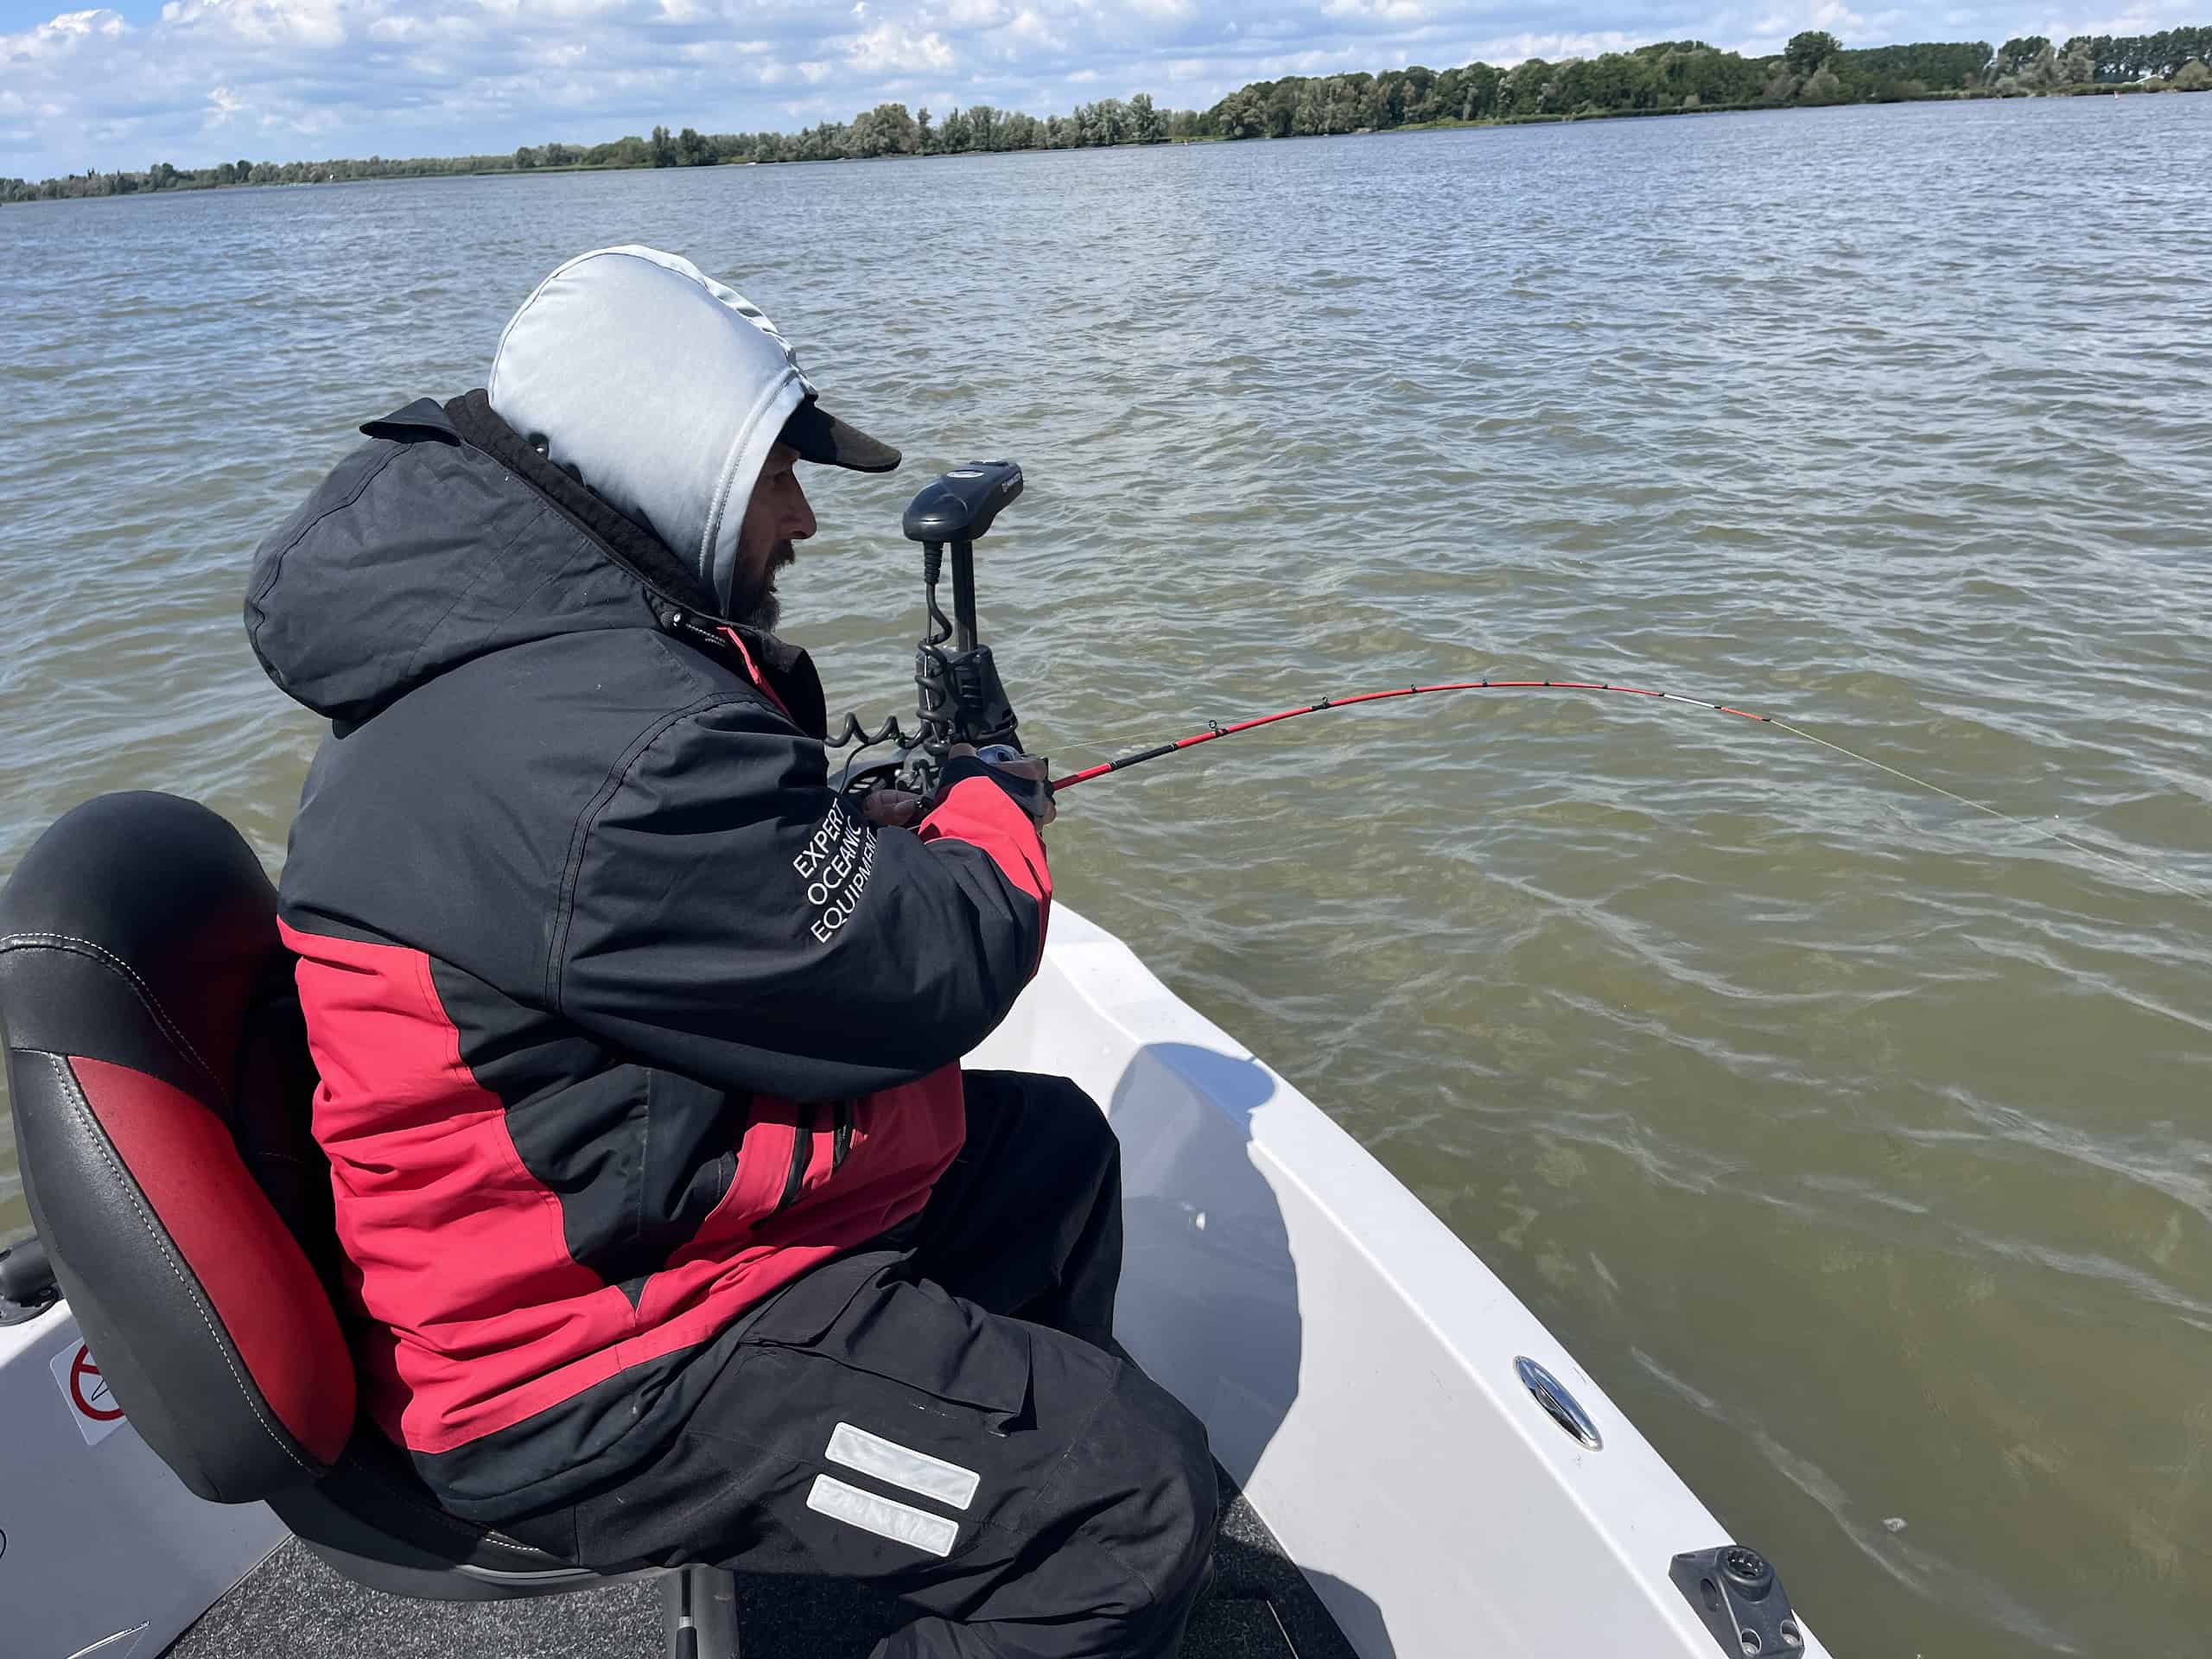 Persoon in een rood en zwart jasje, zittend op een bootstoel terwijl hij op een bewolkte dag in een grote watermassa voorvissen.